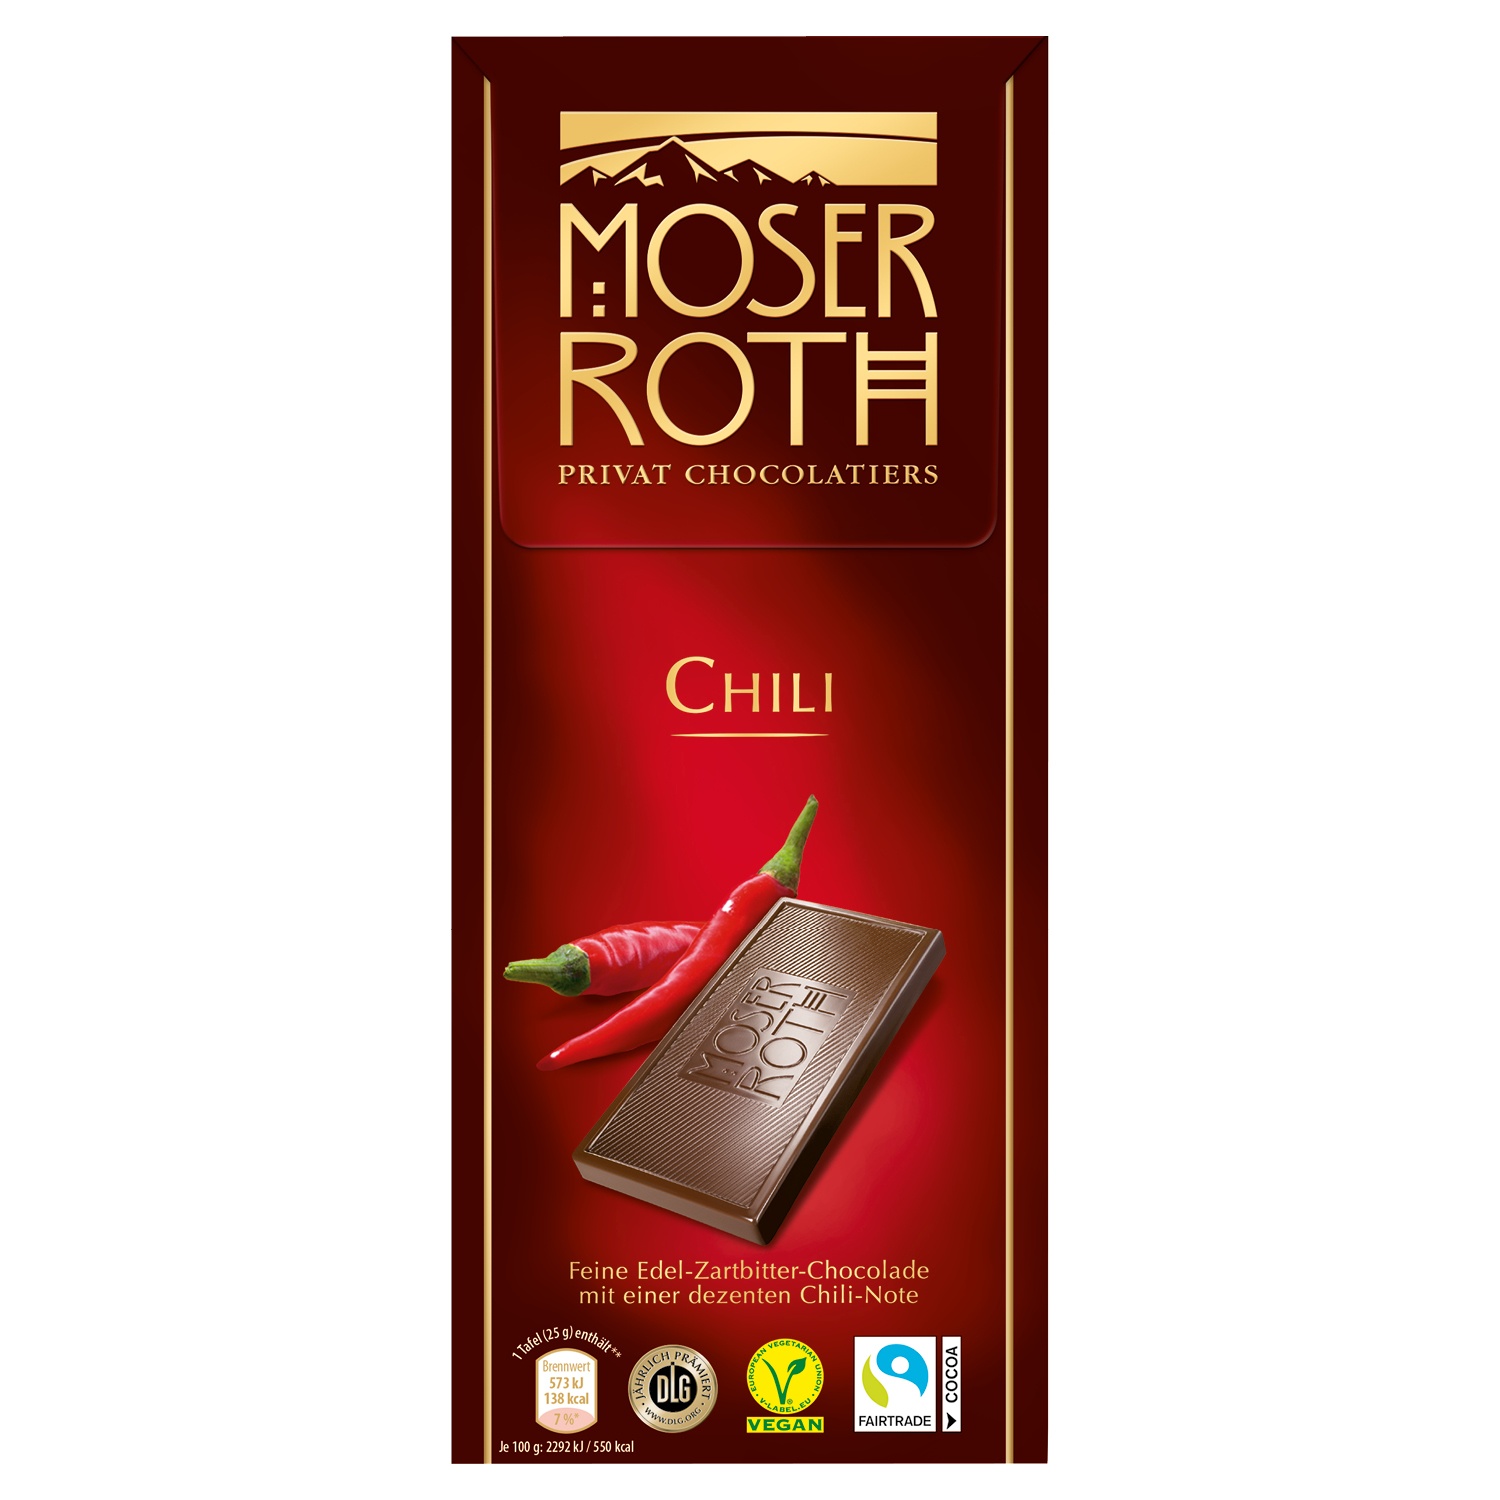 Roth schokolade - Wählen Sie dem Liebling unserer Experten